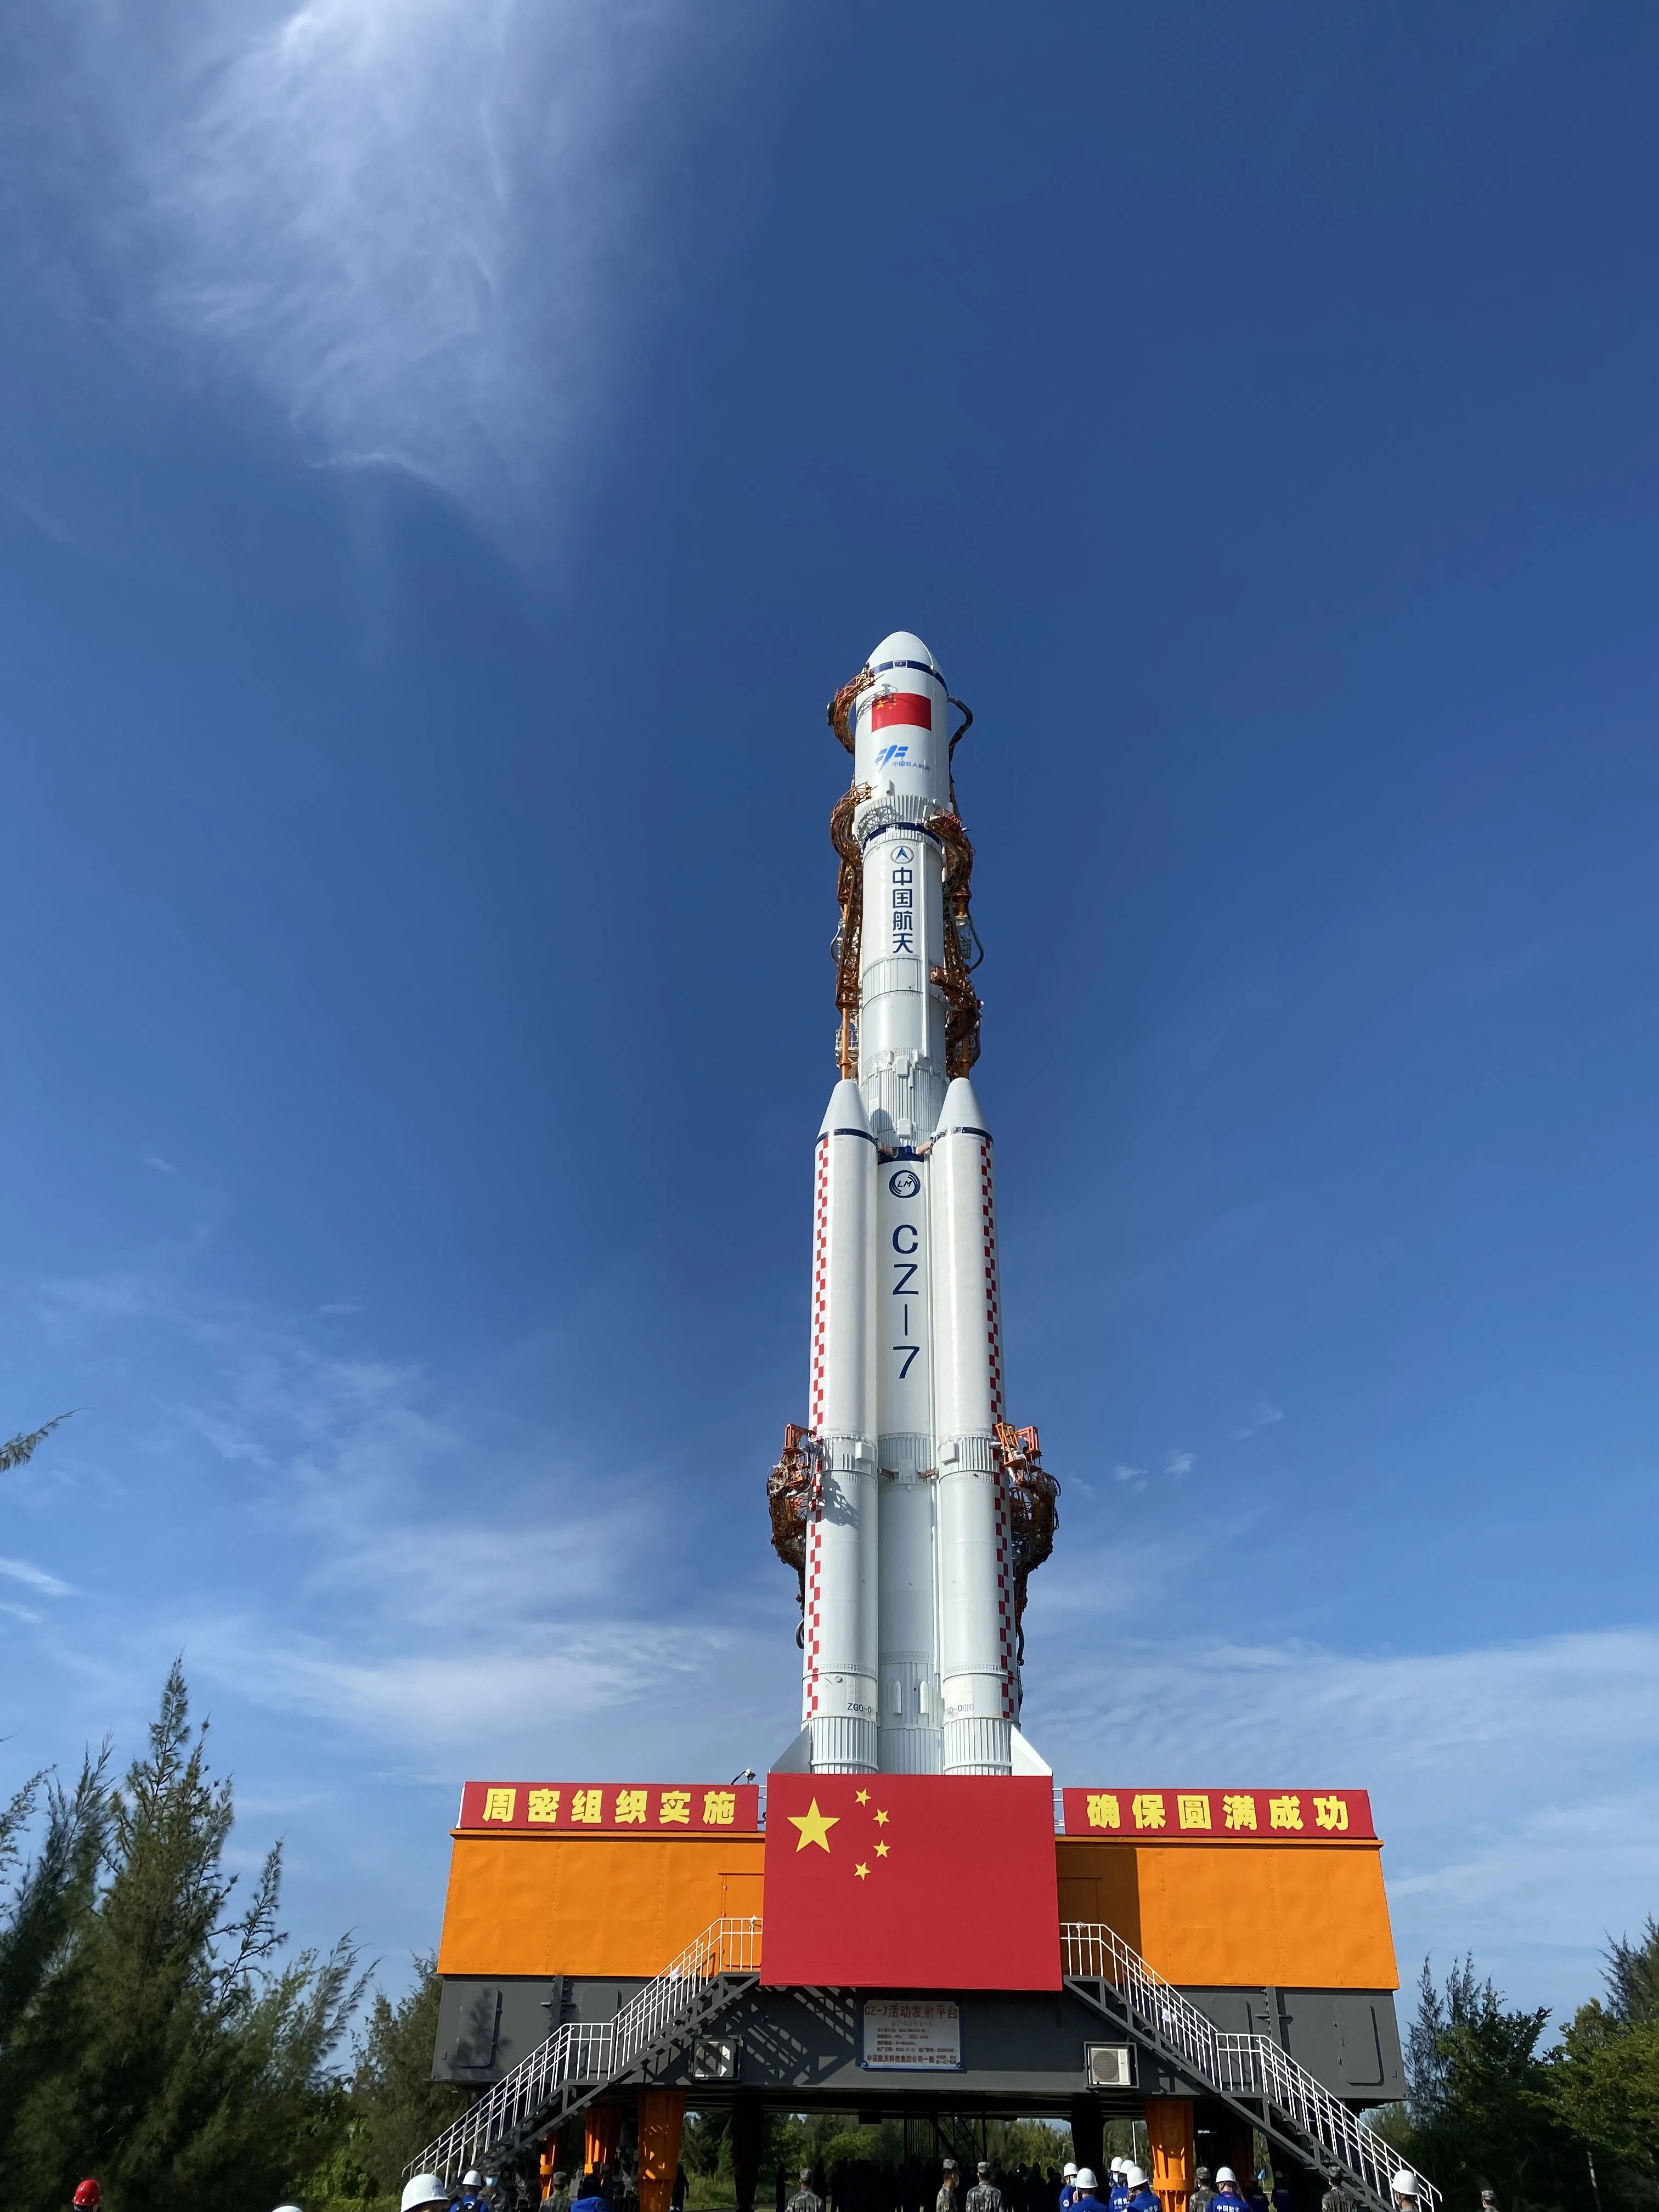 天舟三號貨運飛船船箭組合體垂直轉運至發射區。中國載人航天工程辦公室供圖